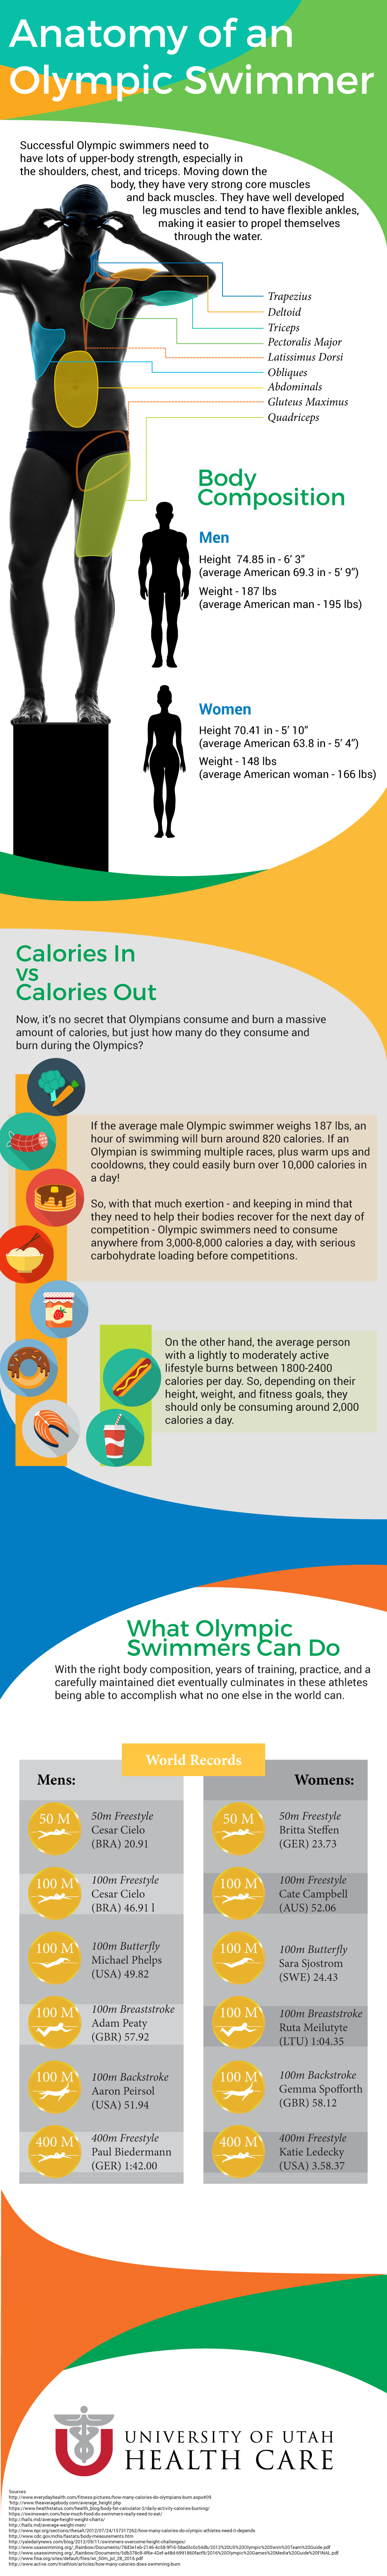 Swimmer Anatomy Infographic